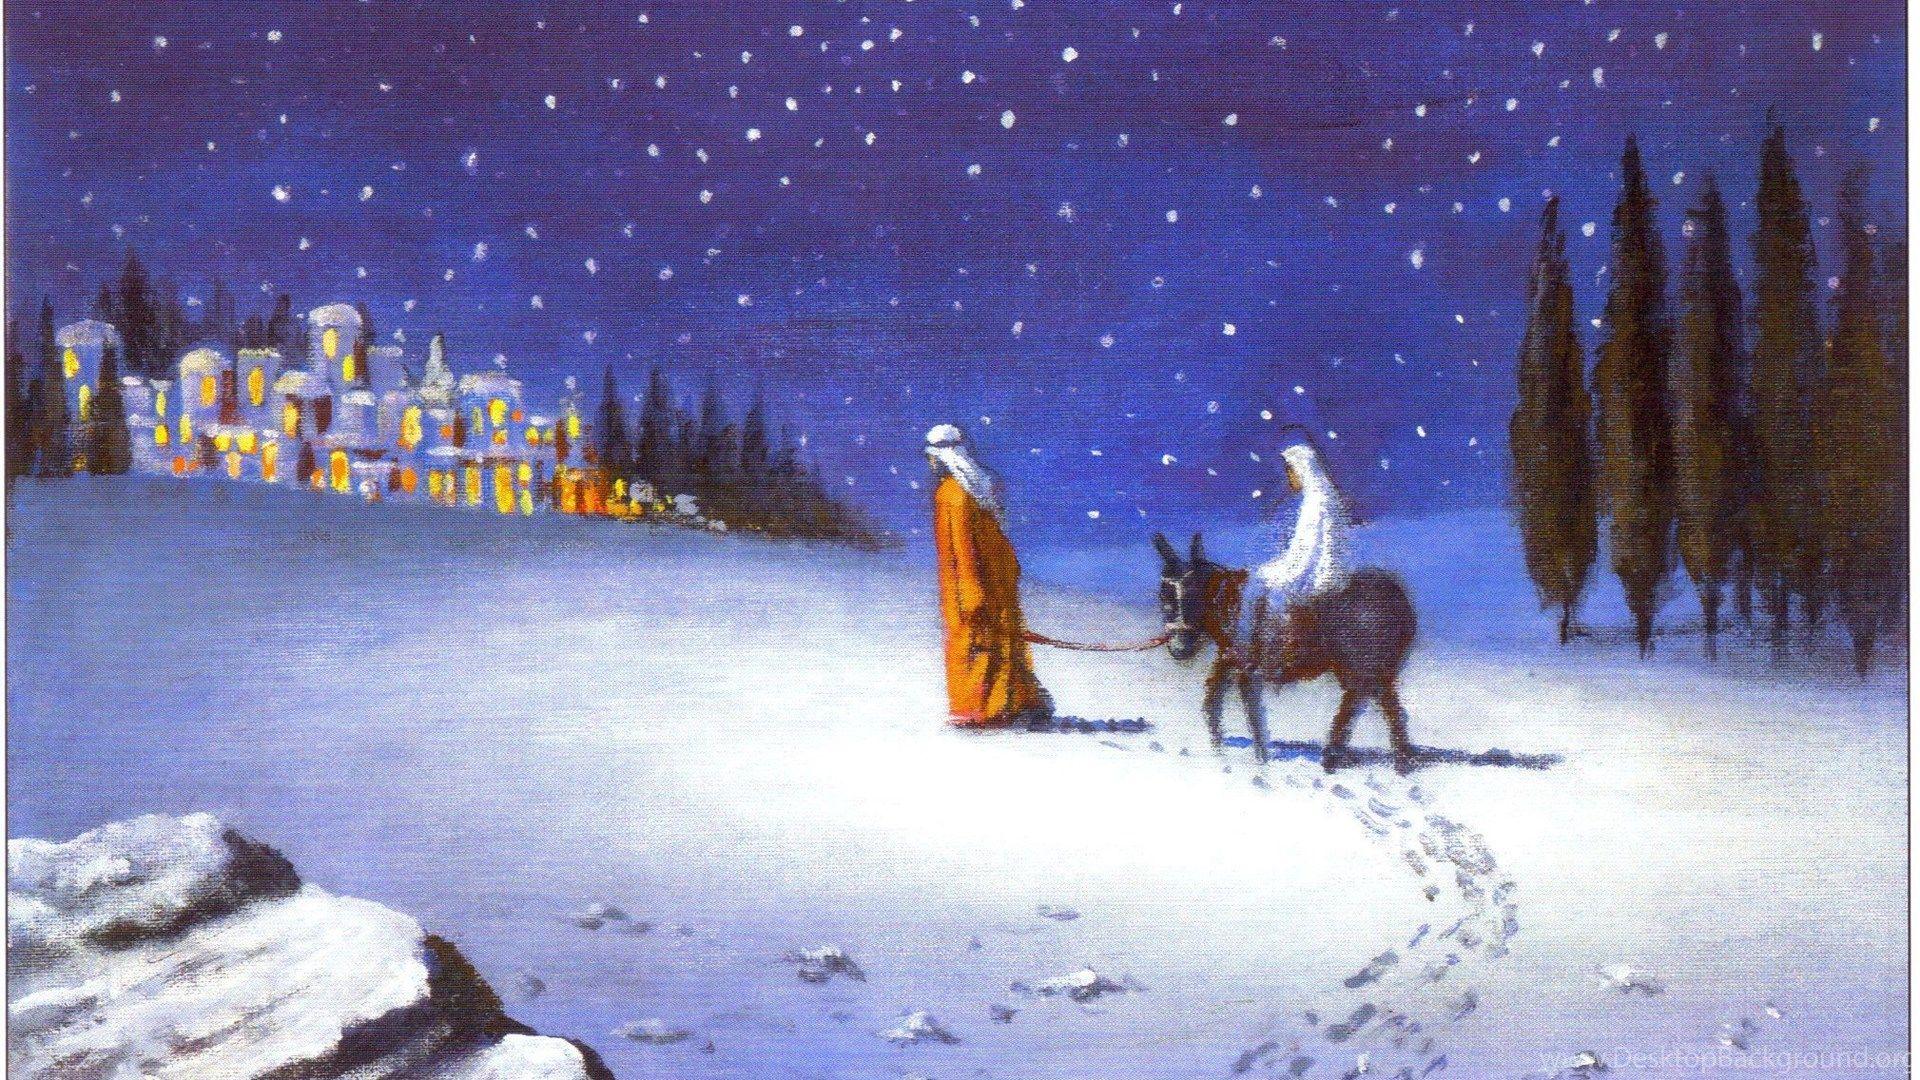 Religious Christmas Wallpapers - Top Những Hình Ảnh Đẹp